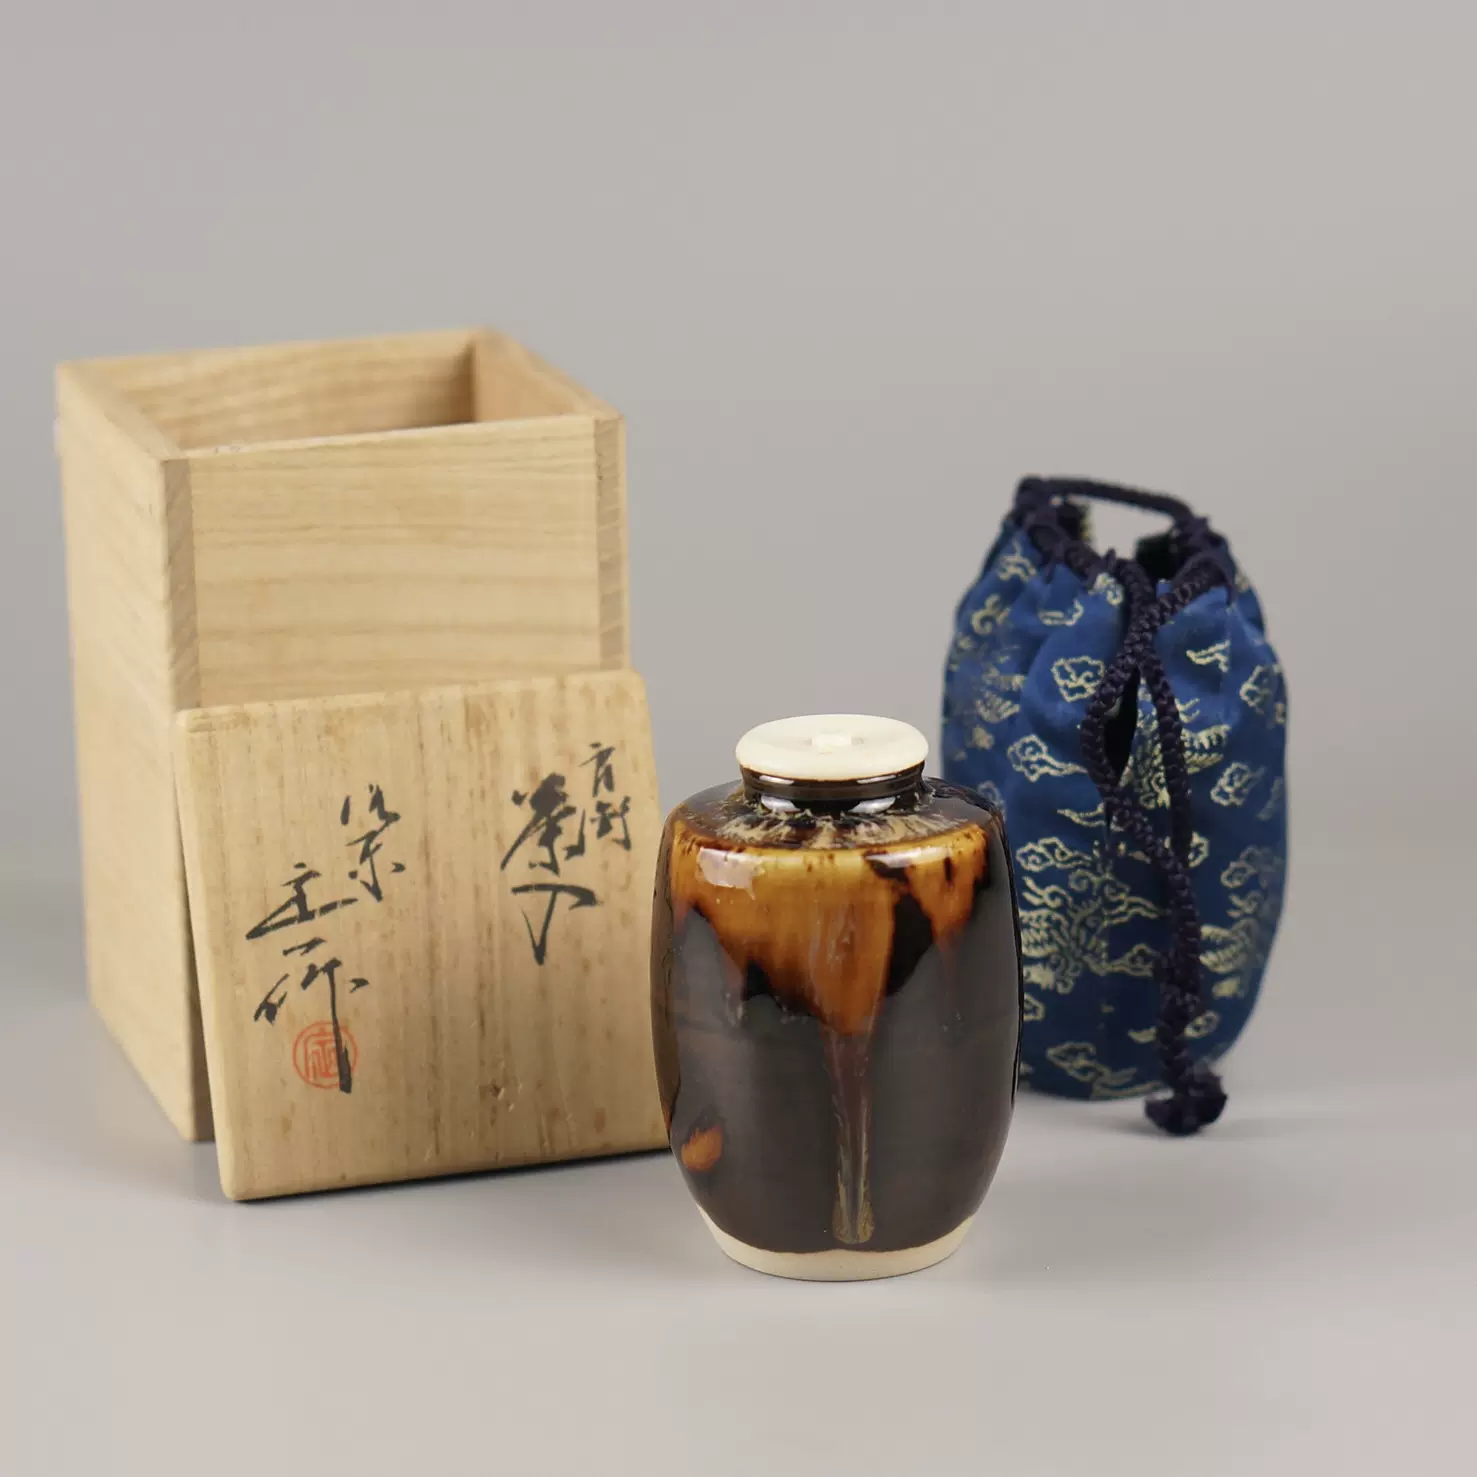 日本乾茂號造純錫製茶葉罐本錫茶壺茶入茶倉日式茶道具煎茶器錫罐-Taobao